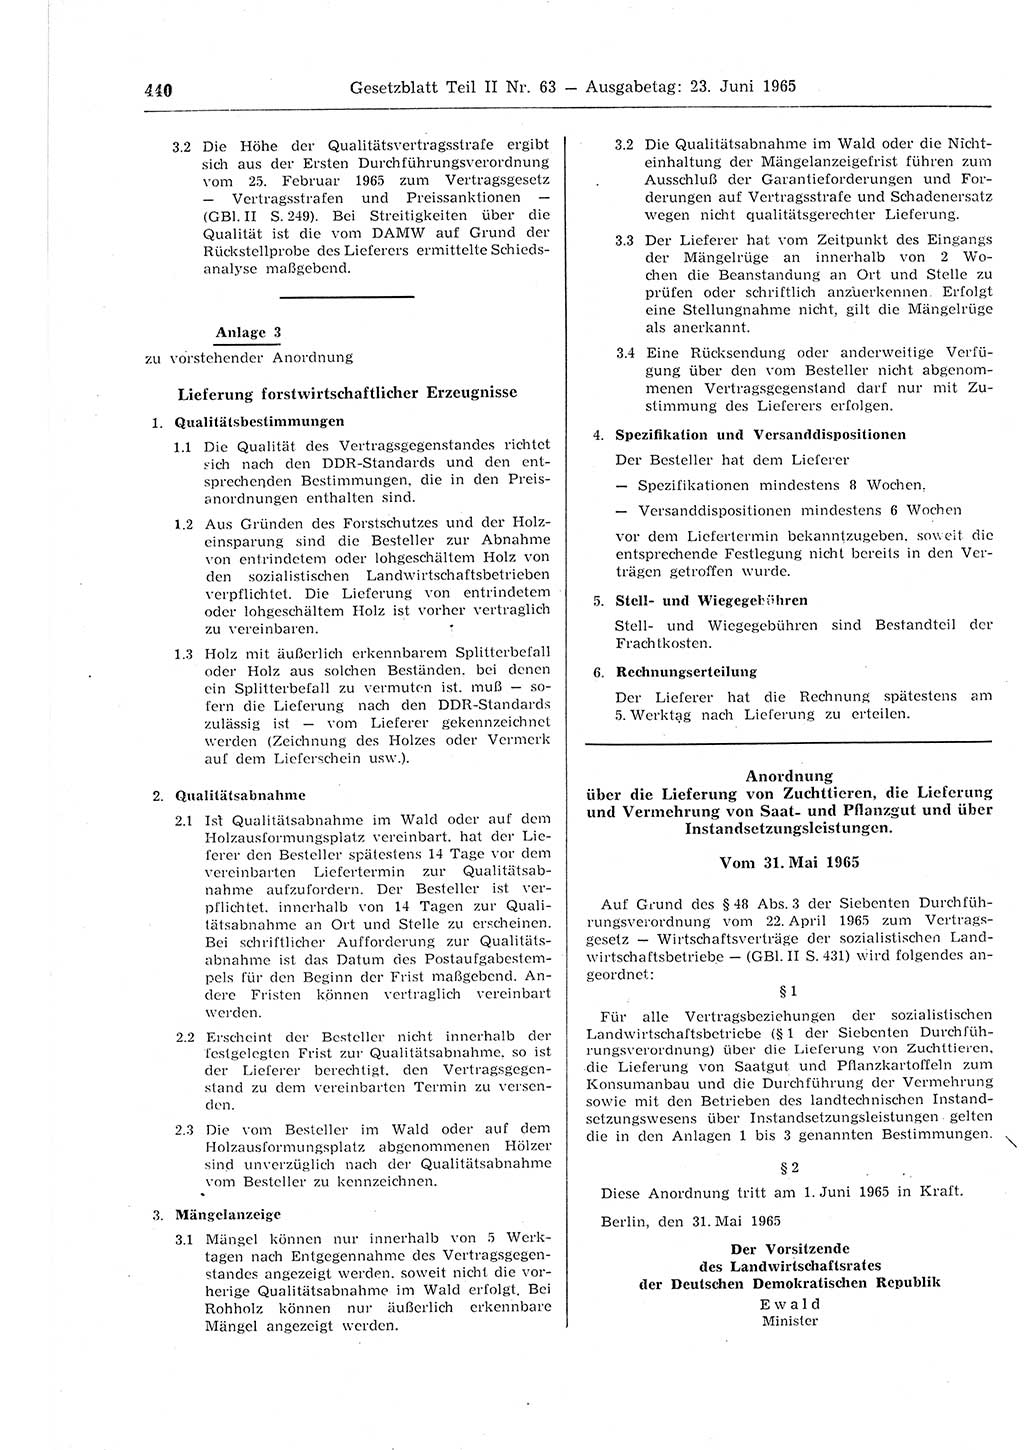 Gesetzblatt (GBl.) der Deutschen Demokratischen Republik (DDR) Teil ⅠⅠ 1965, Seite 440 (GBl. DDR ⅠⅠ 1965, S. 440)